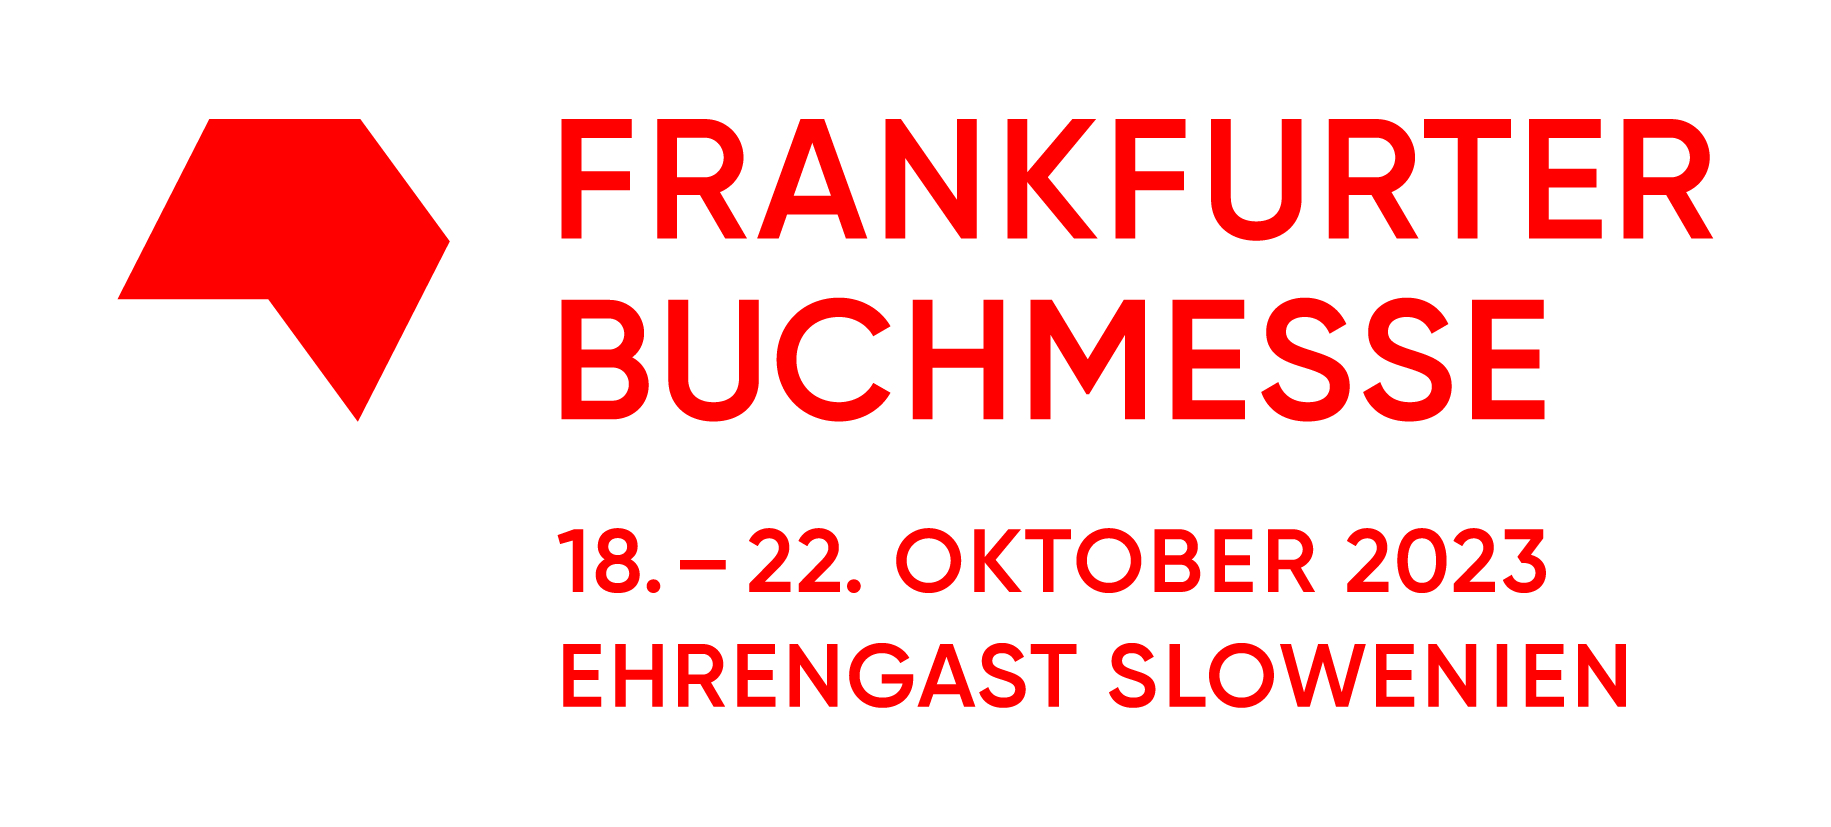 Frankfurter Buchmesse 2023: Vorfreude